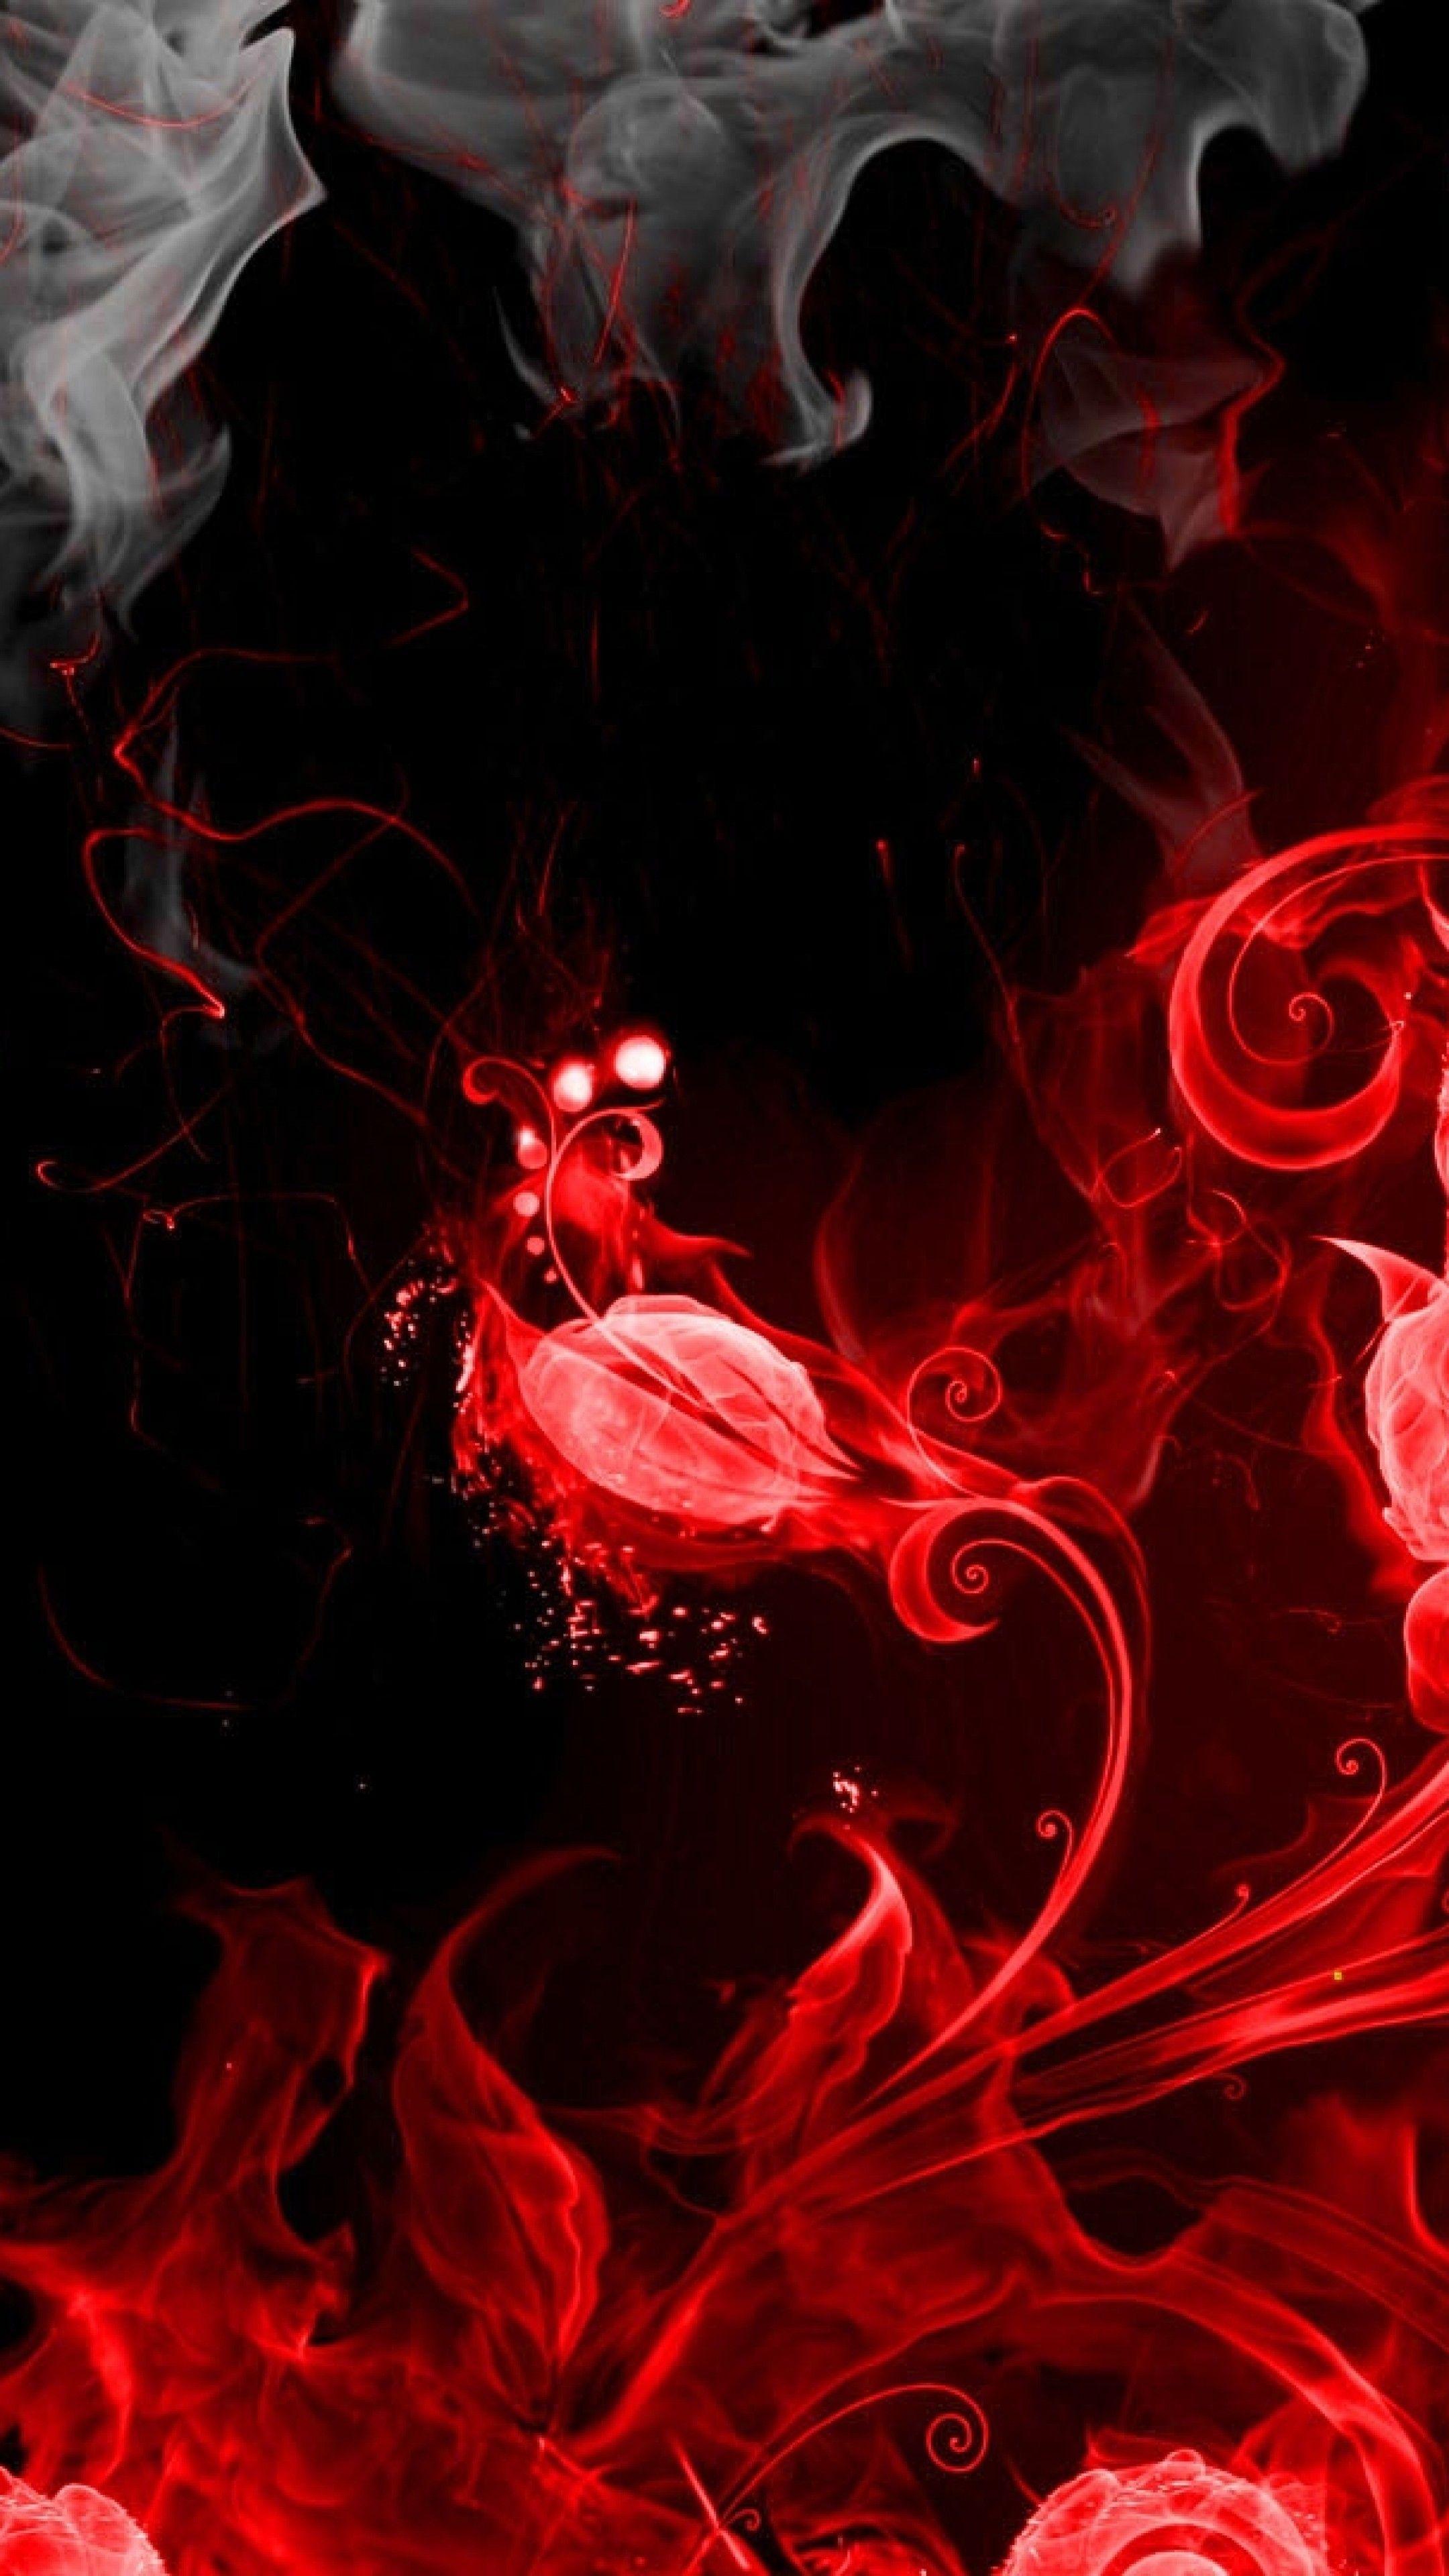 4K Red and Black iPhone Wallpapers - Top Những Hình Ảnh Đẹp